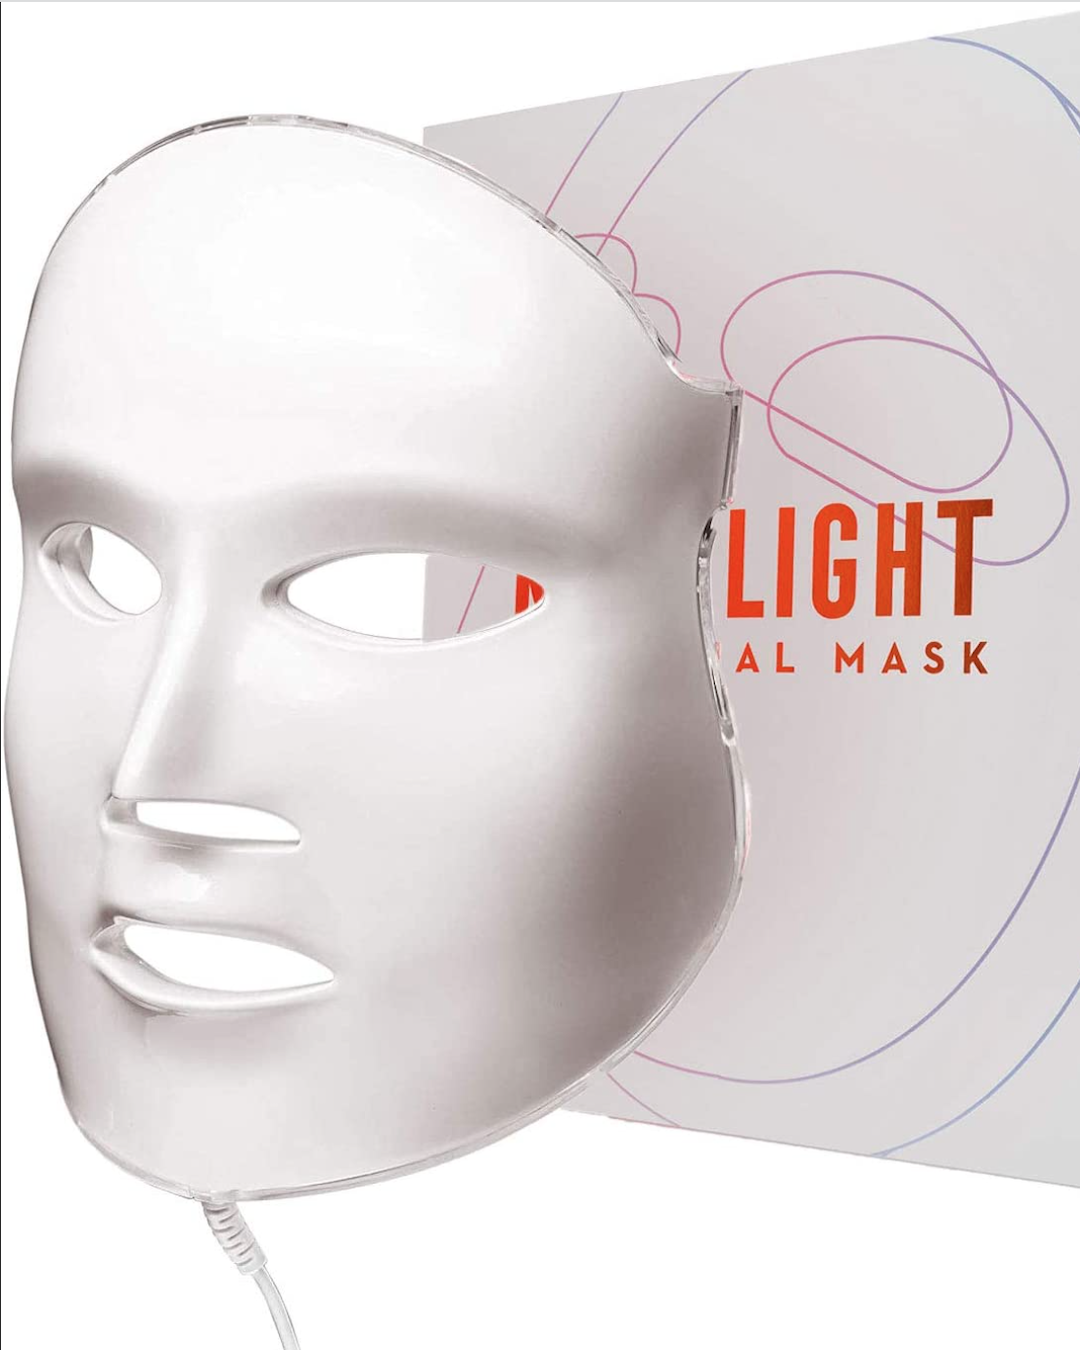 Aphrona LED mask to shop on Amazon